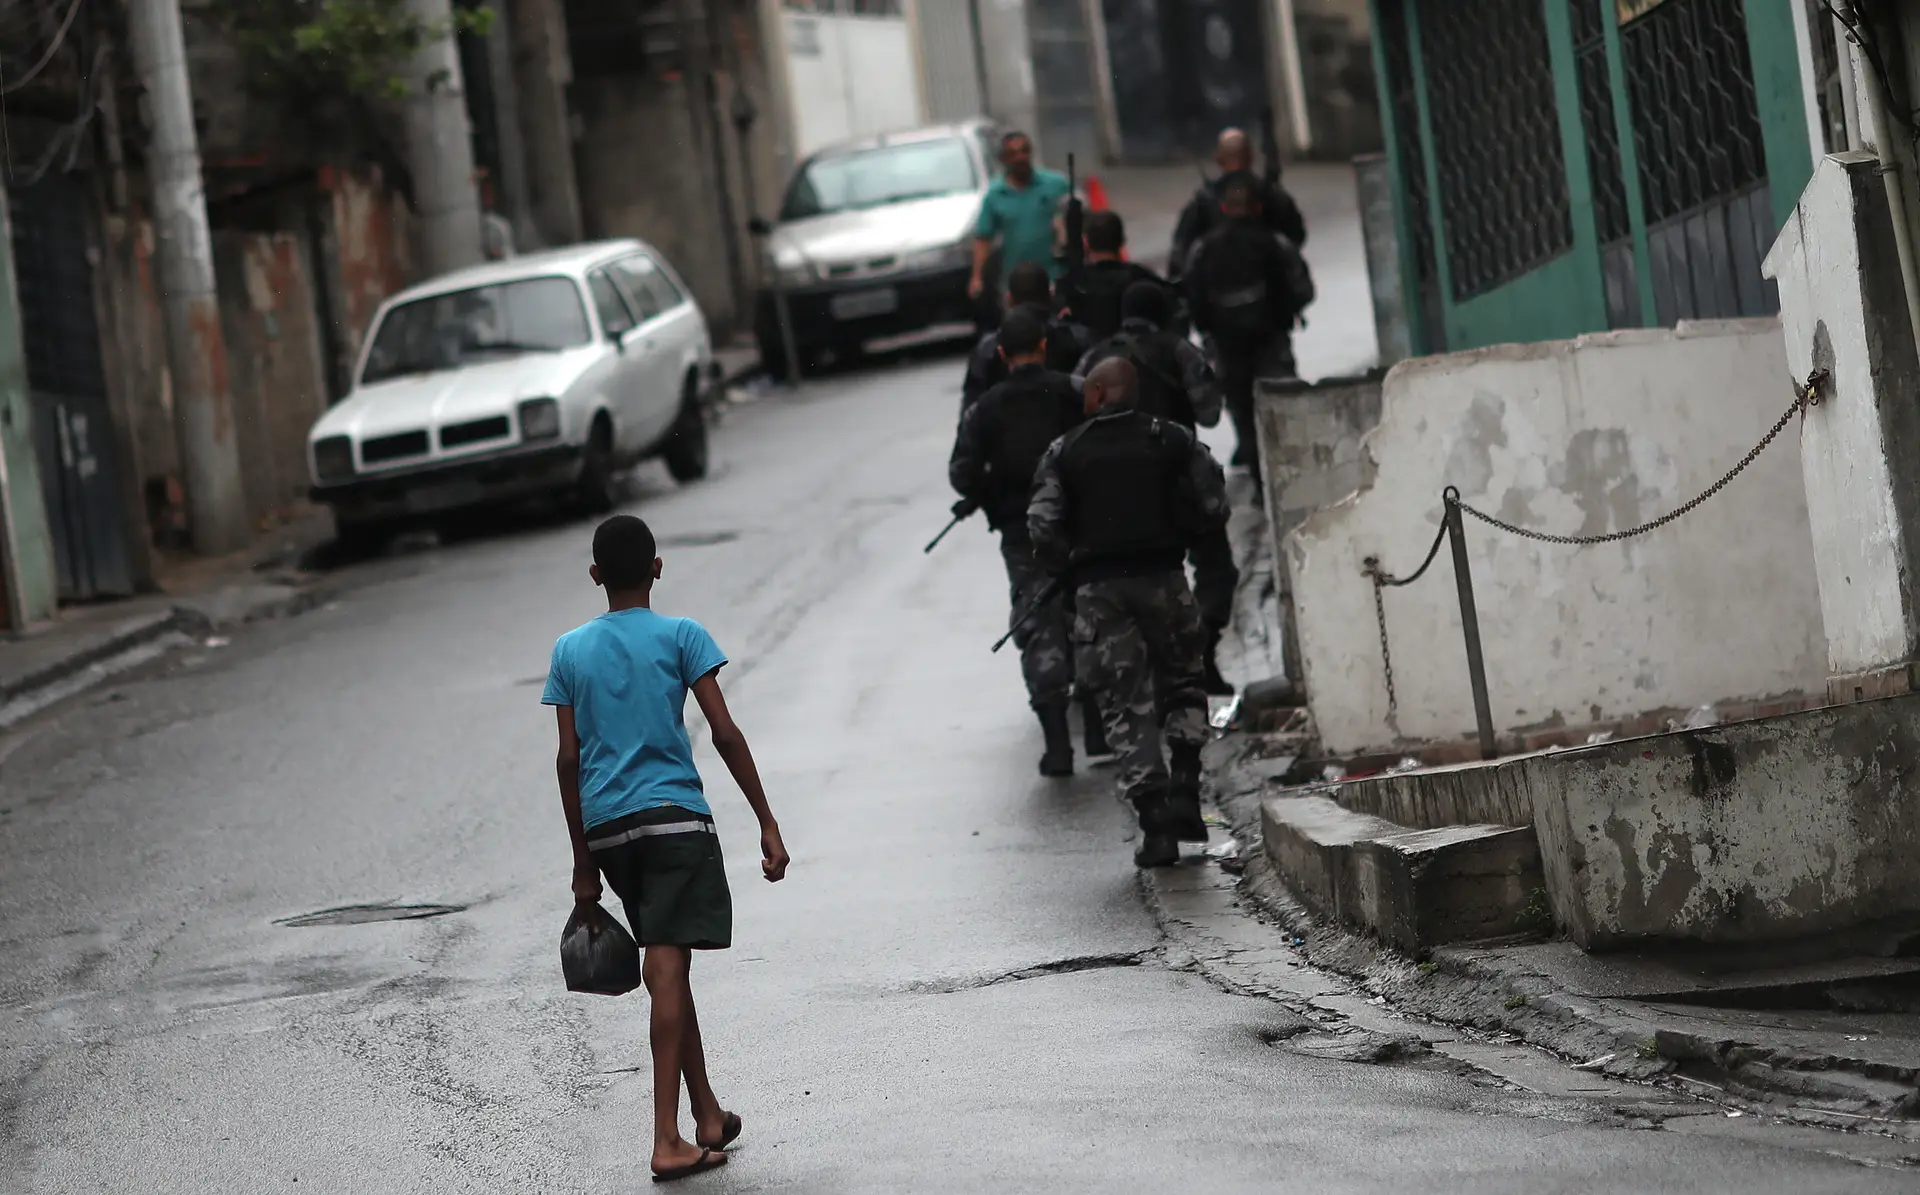 Rapaz observa a Polícia brasileira durante uma patrulha contra o tráfico de droga, numa favela do Rio de Janeiro.